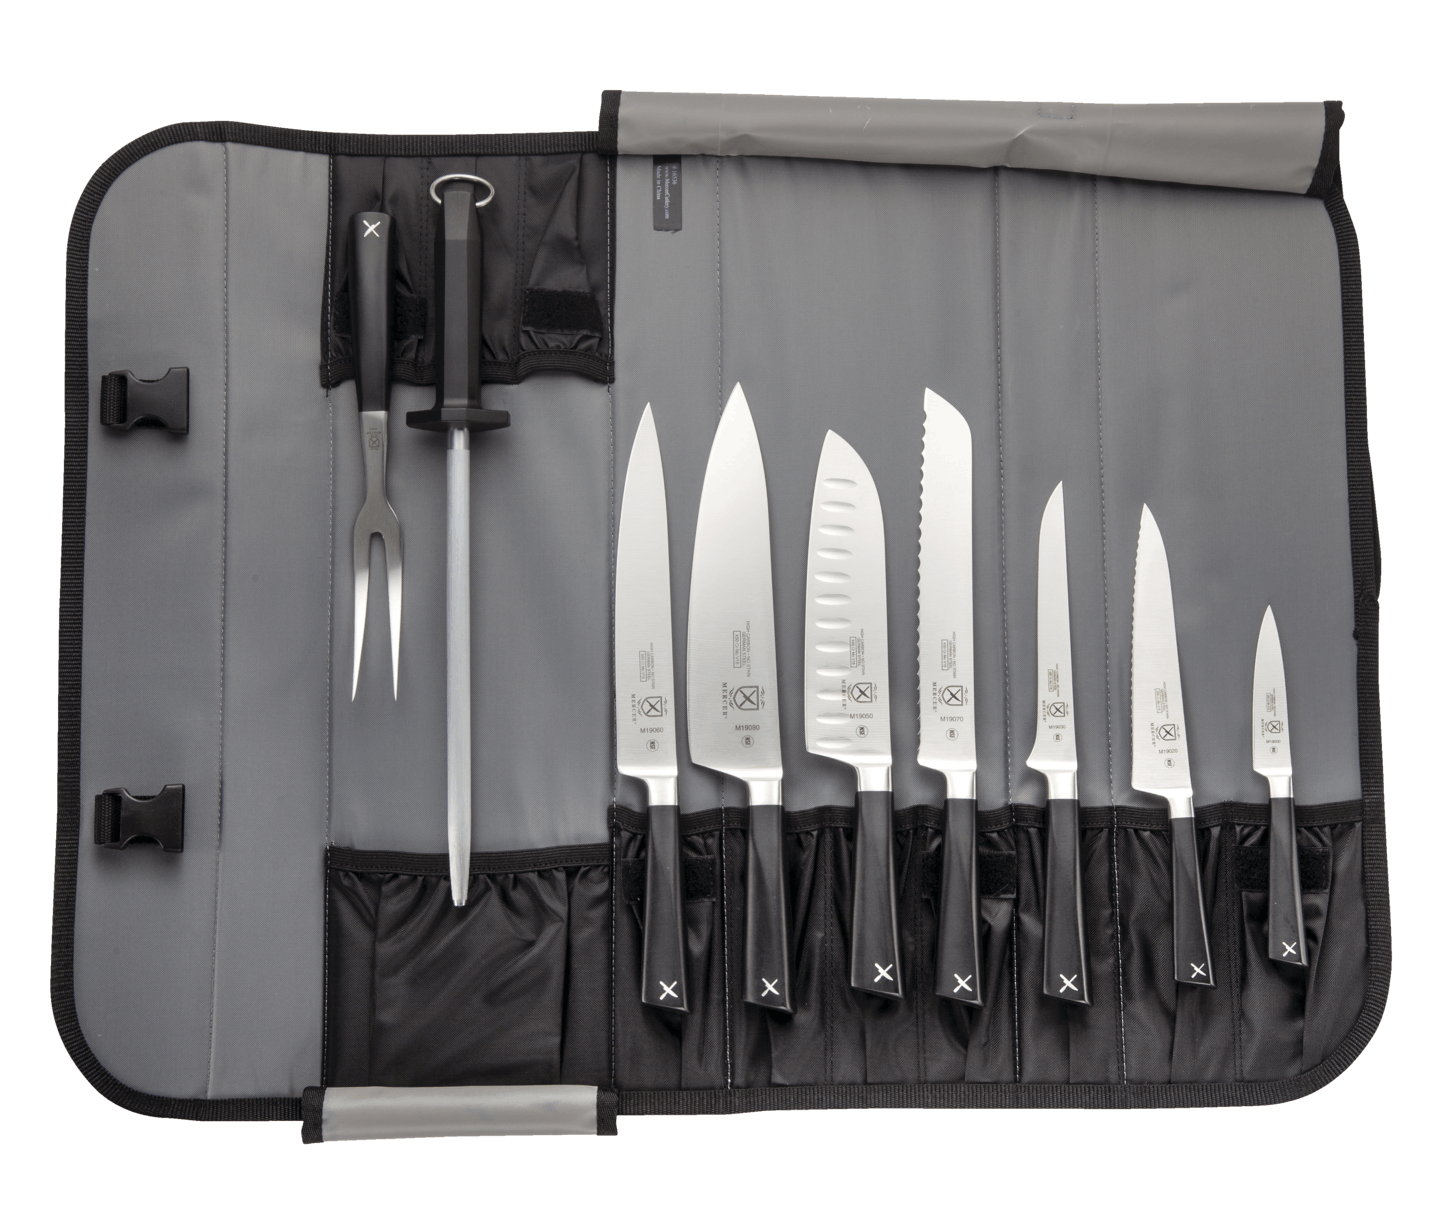 Mercer Culinary 10-Piece Zum Knife Set in Case